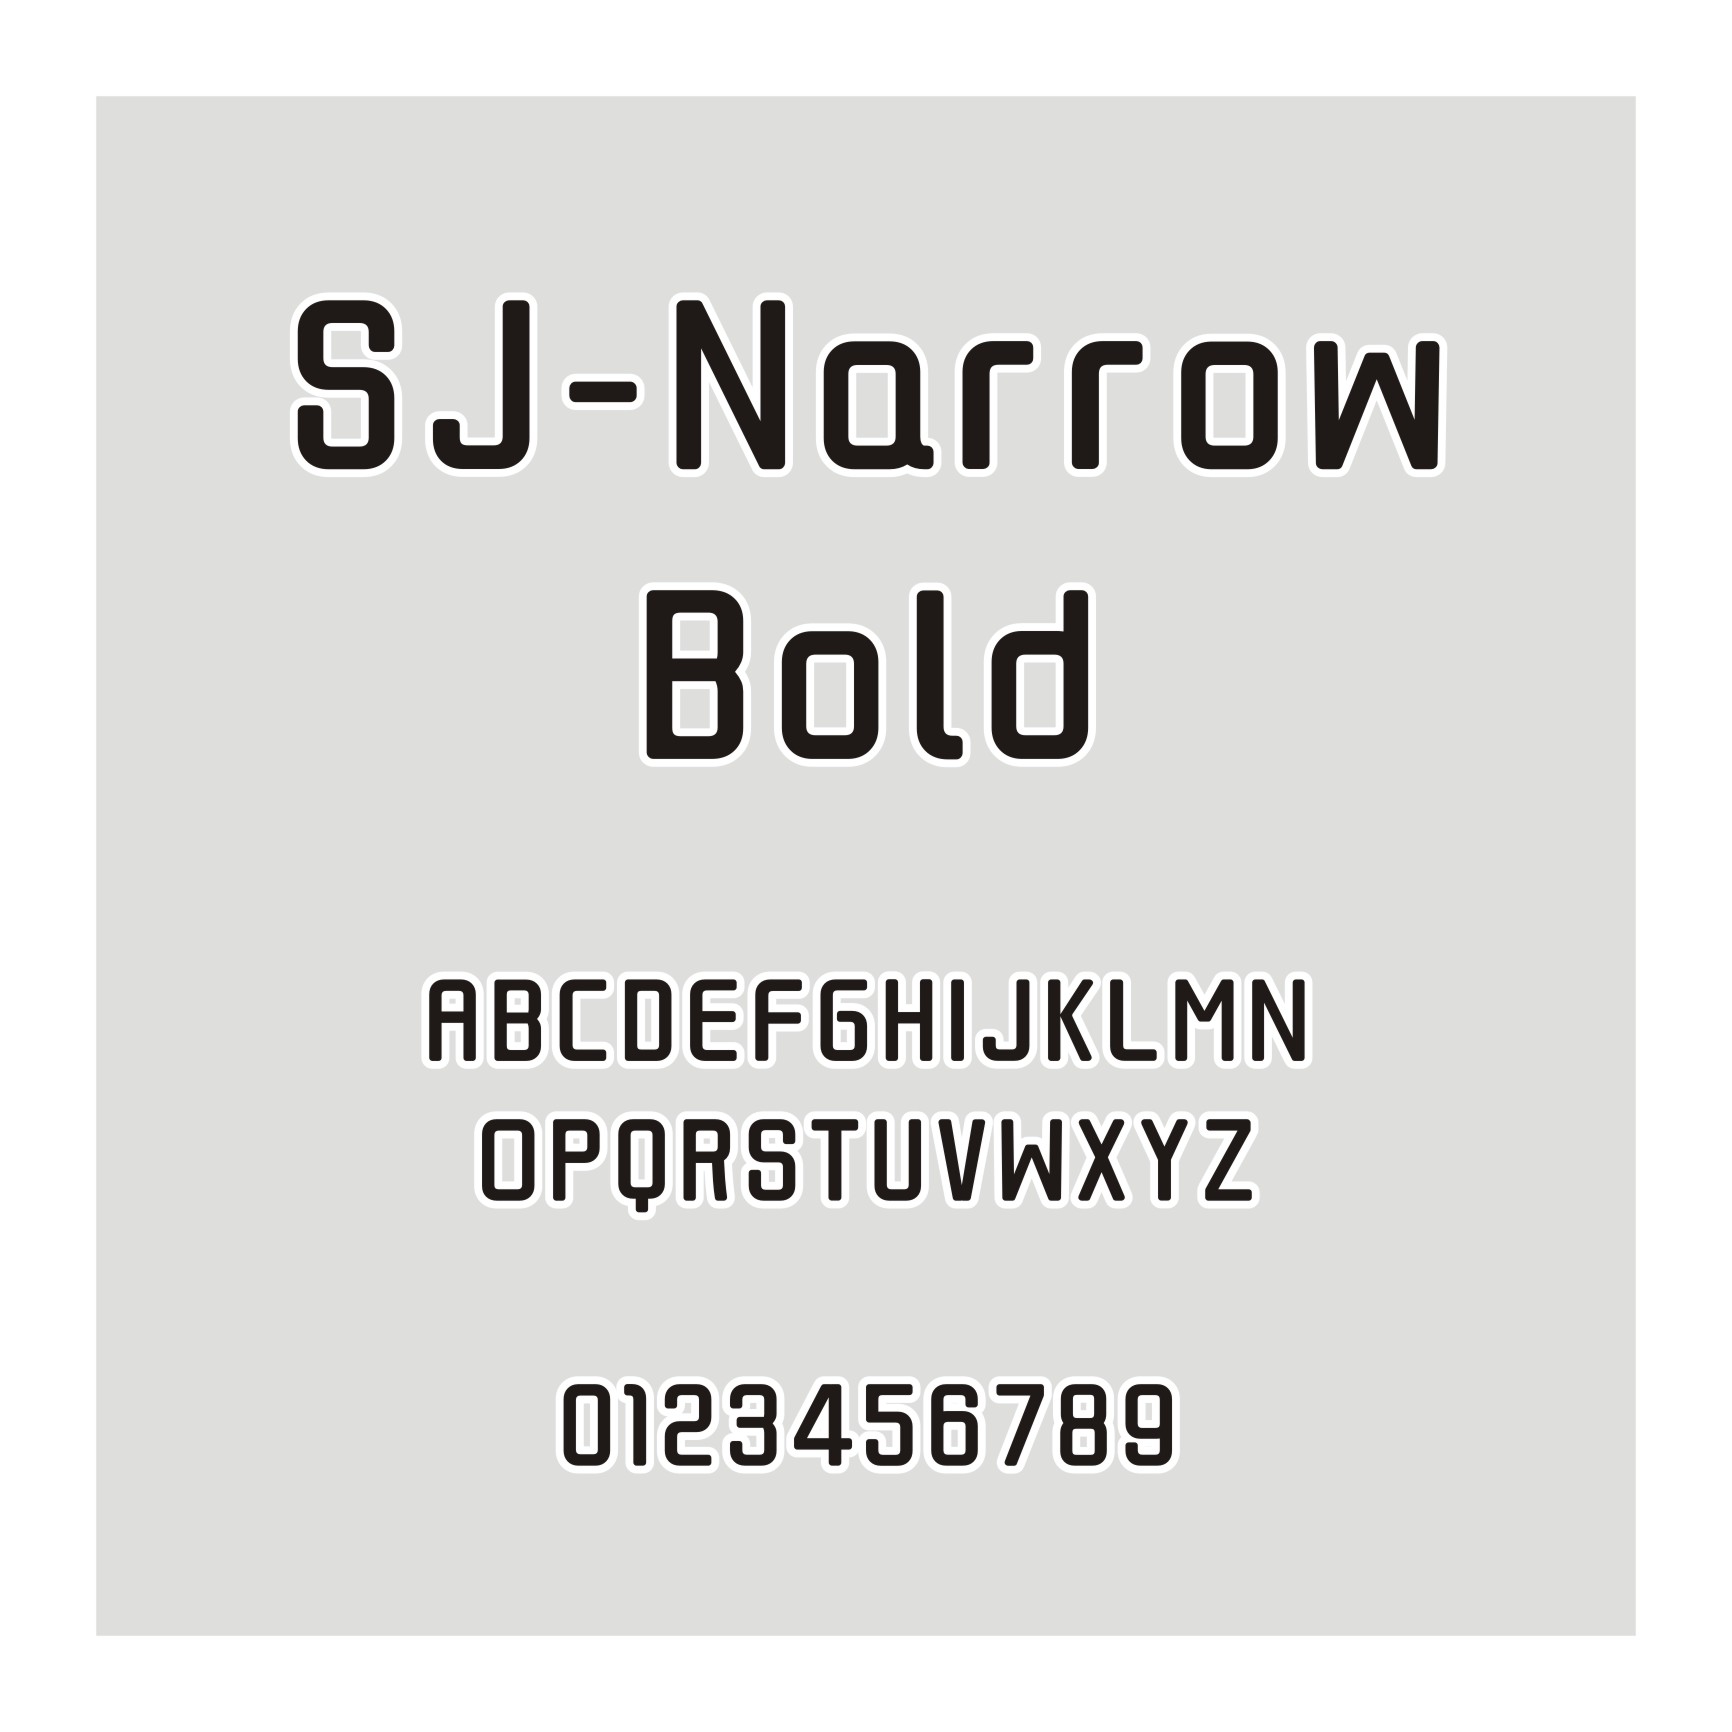 SJ-Narrow Bold